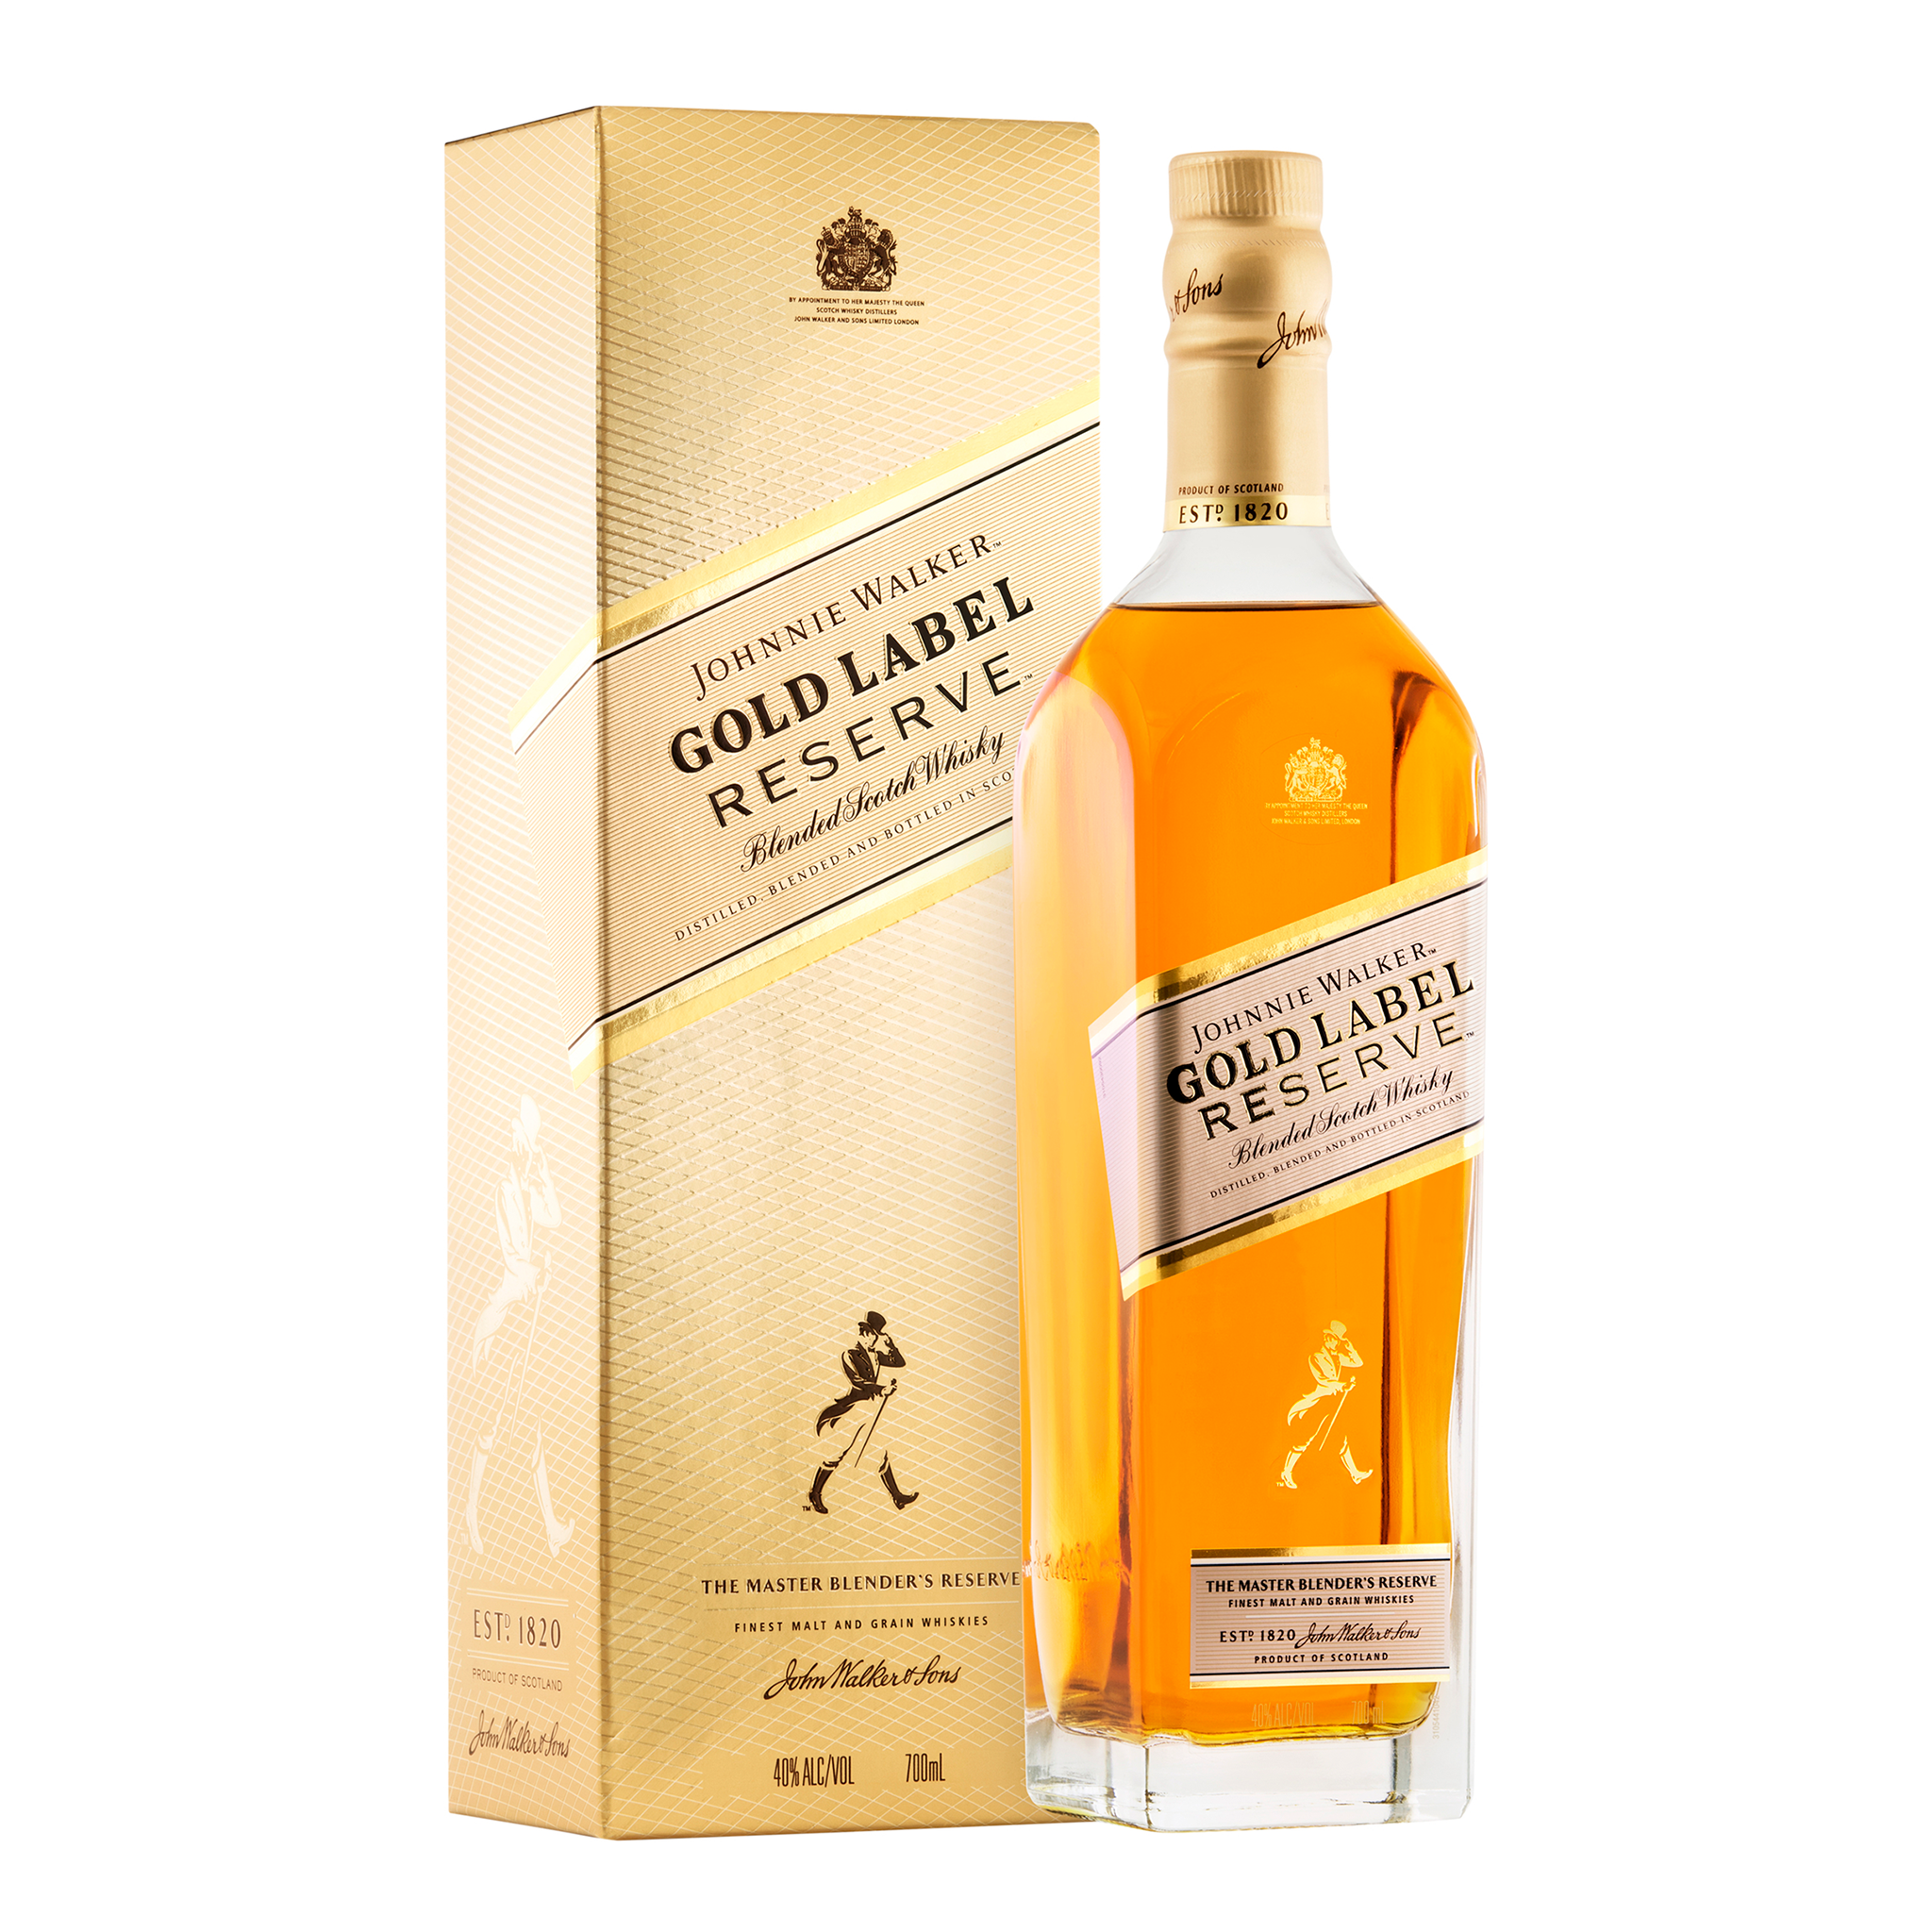 Johnnie Walker Gold Label Reserve Blended Scotch